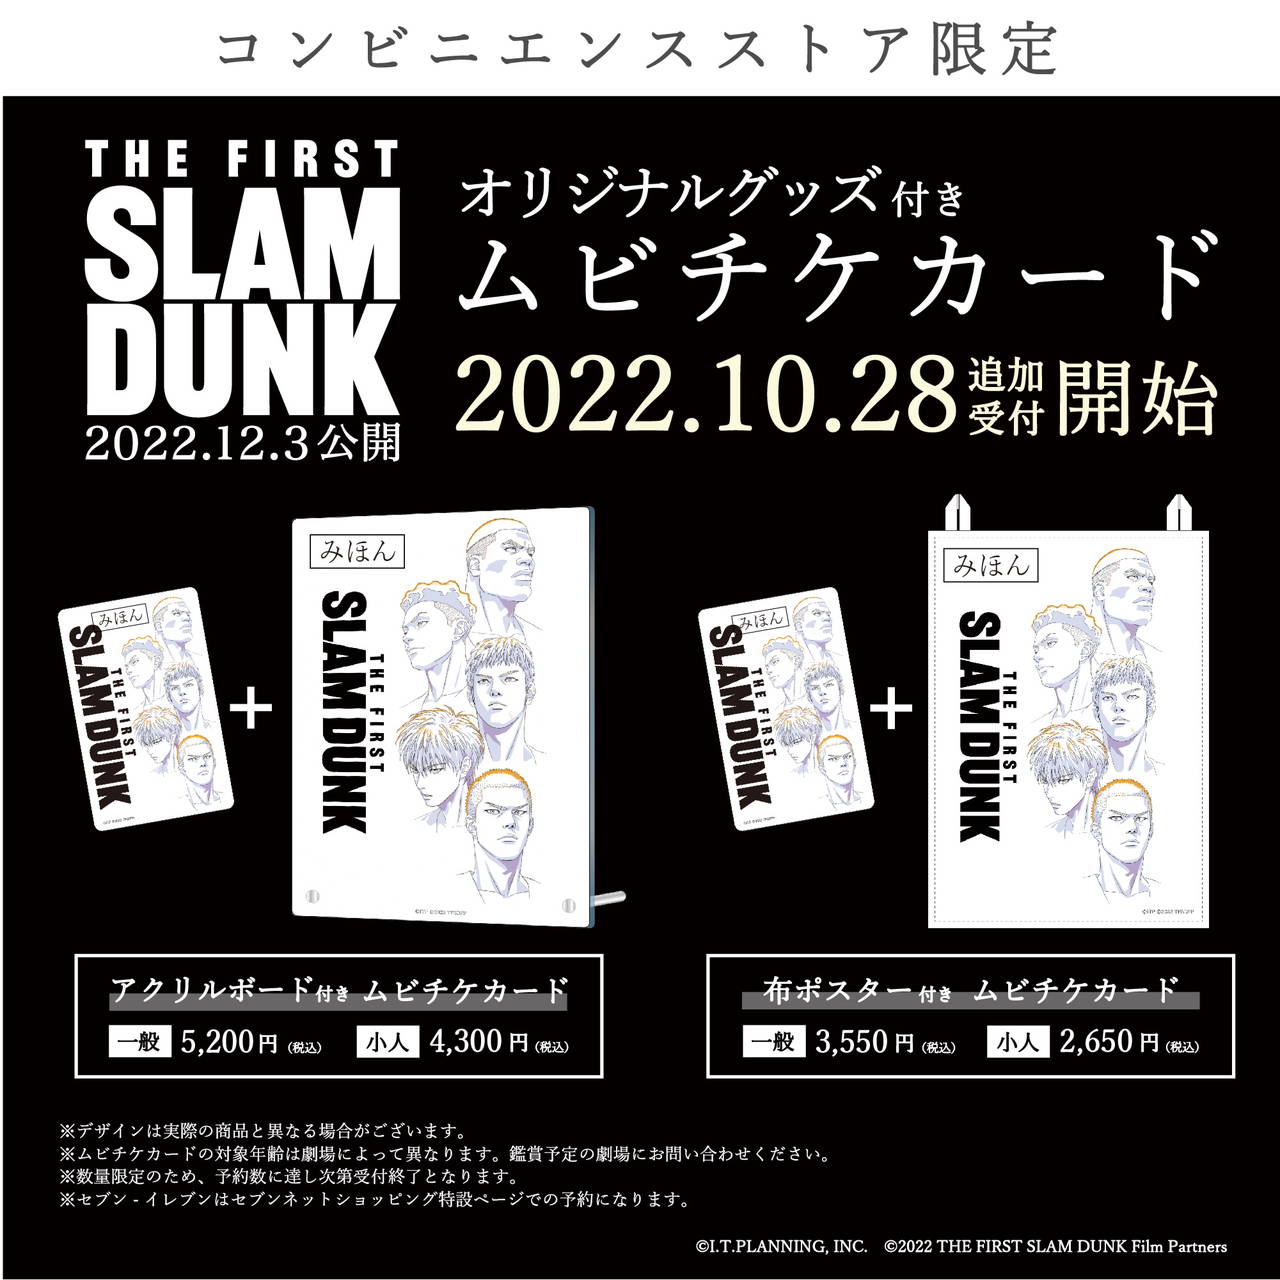 映画『THE FIRST SLAM DUNK』井上雄彦描き下ろし本ポスター公開。新